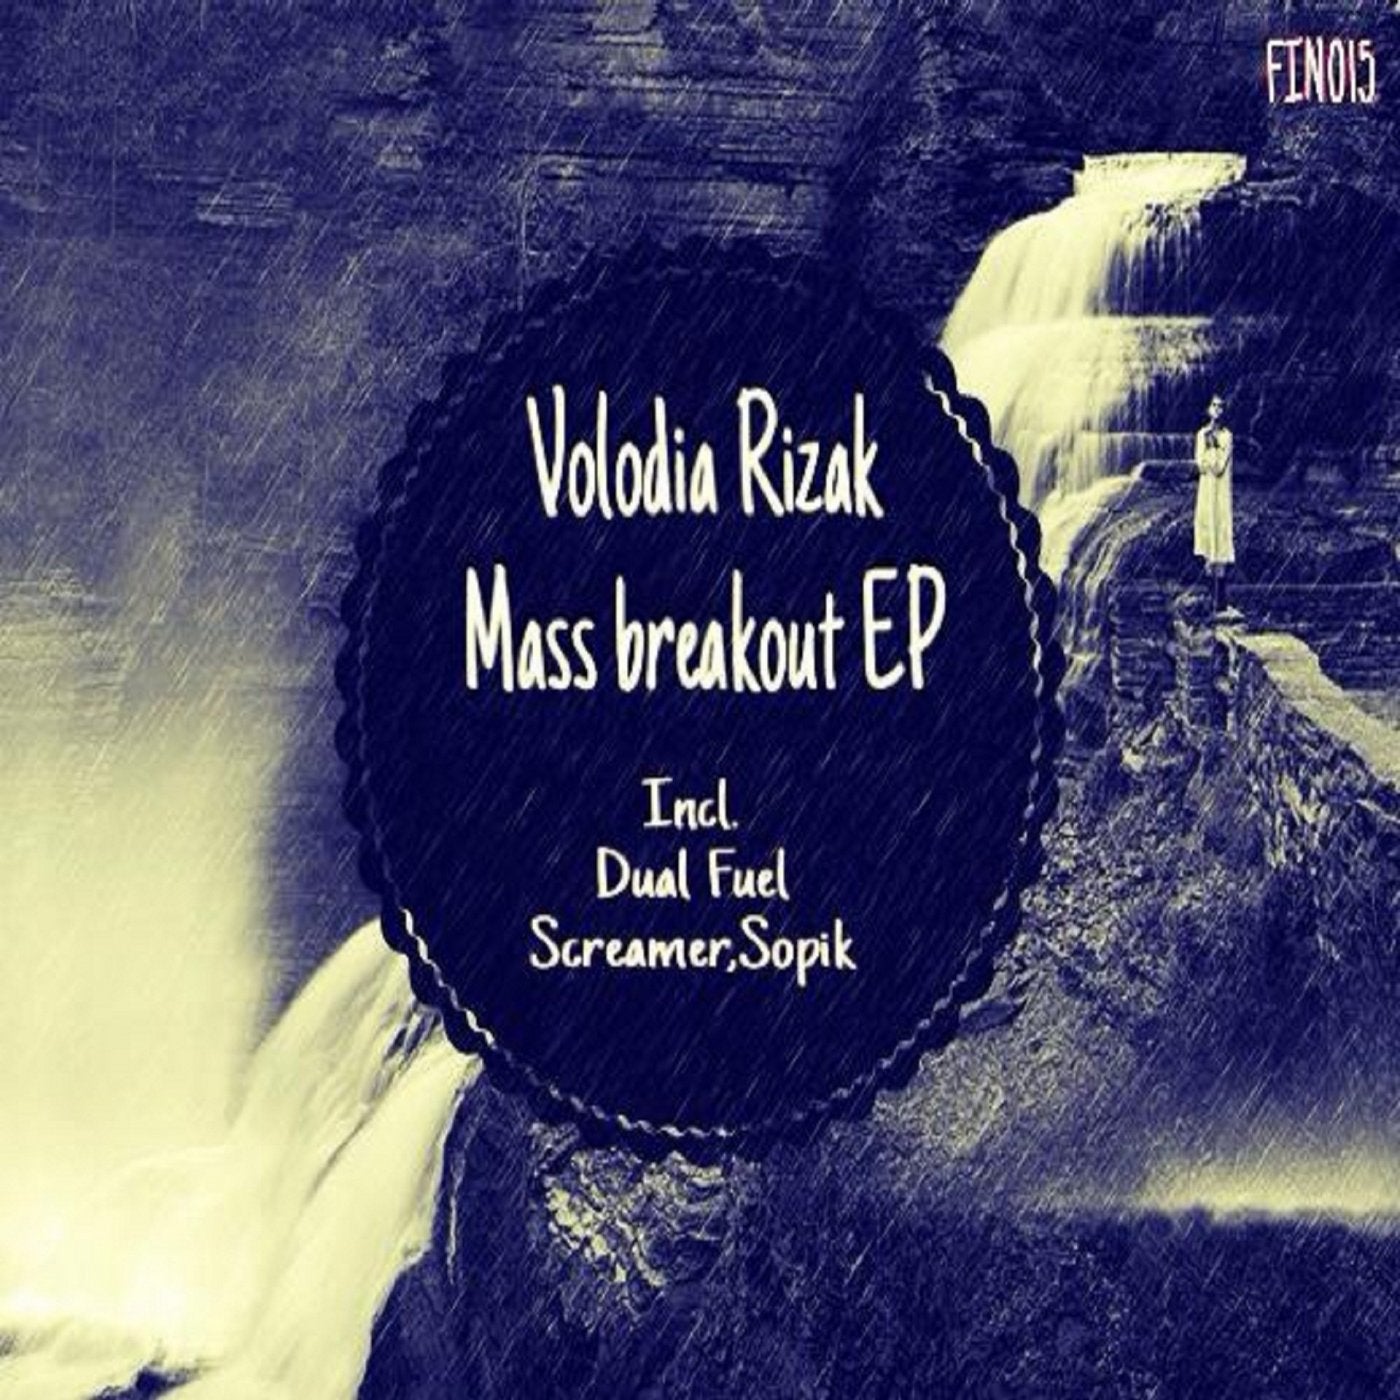 Mass breakout EP